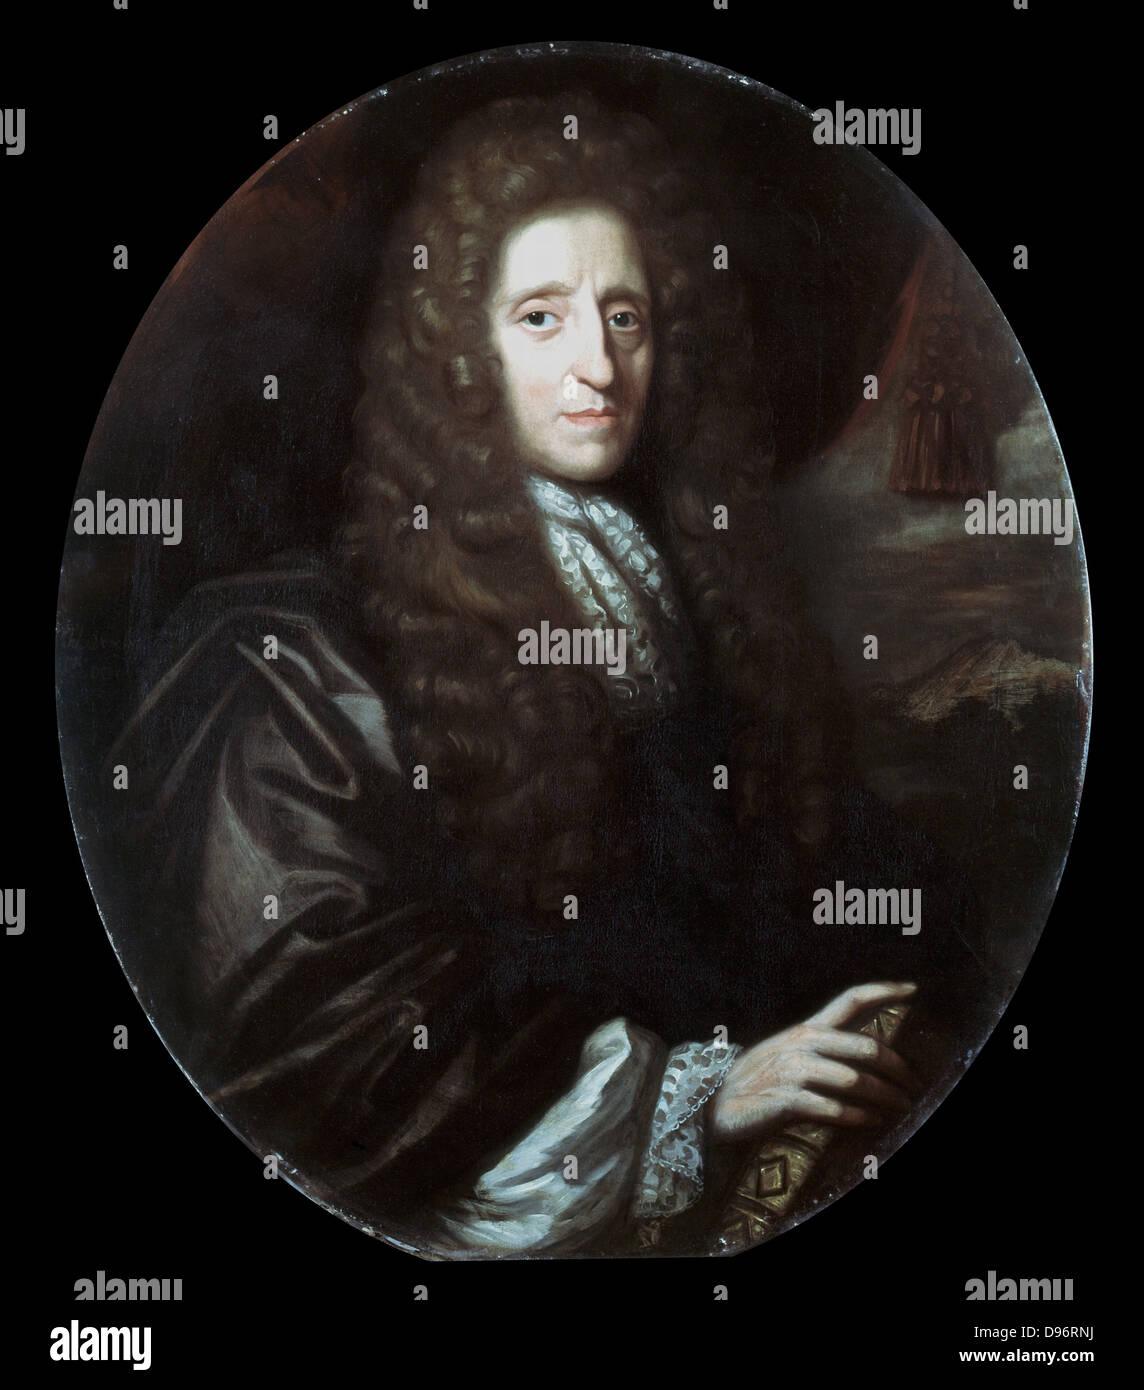 John Locke (1632-1704), englischer Philosoph. Autor von "Essay über den Menschlichen Verstand" (1690). Öl auf Leinwand: Herman Verelst 1689. Stockfoto